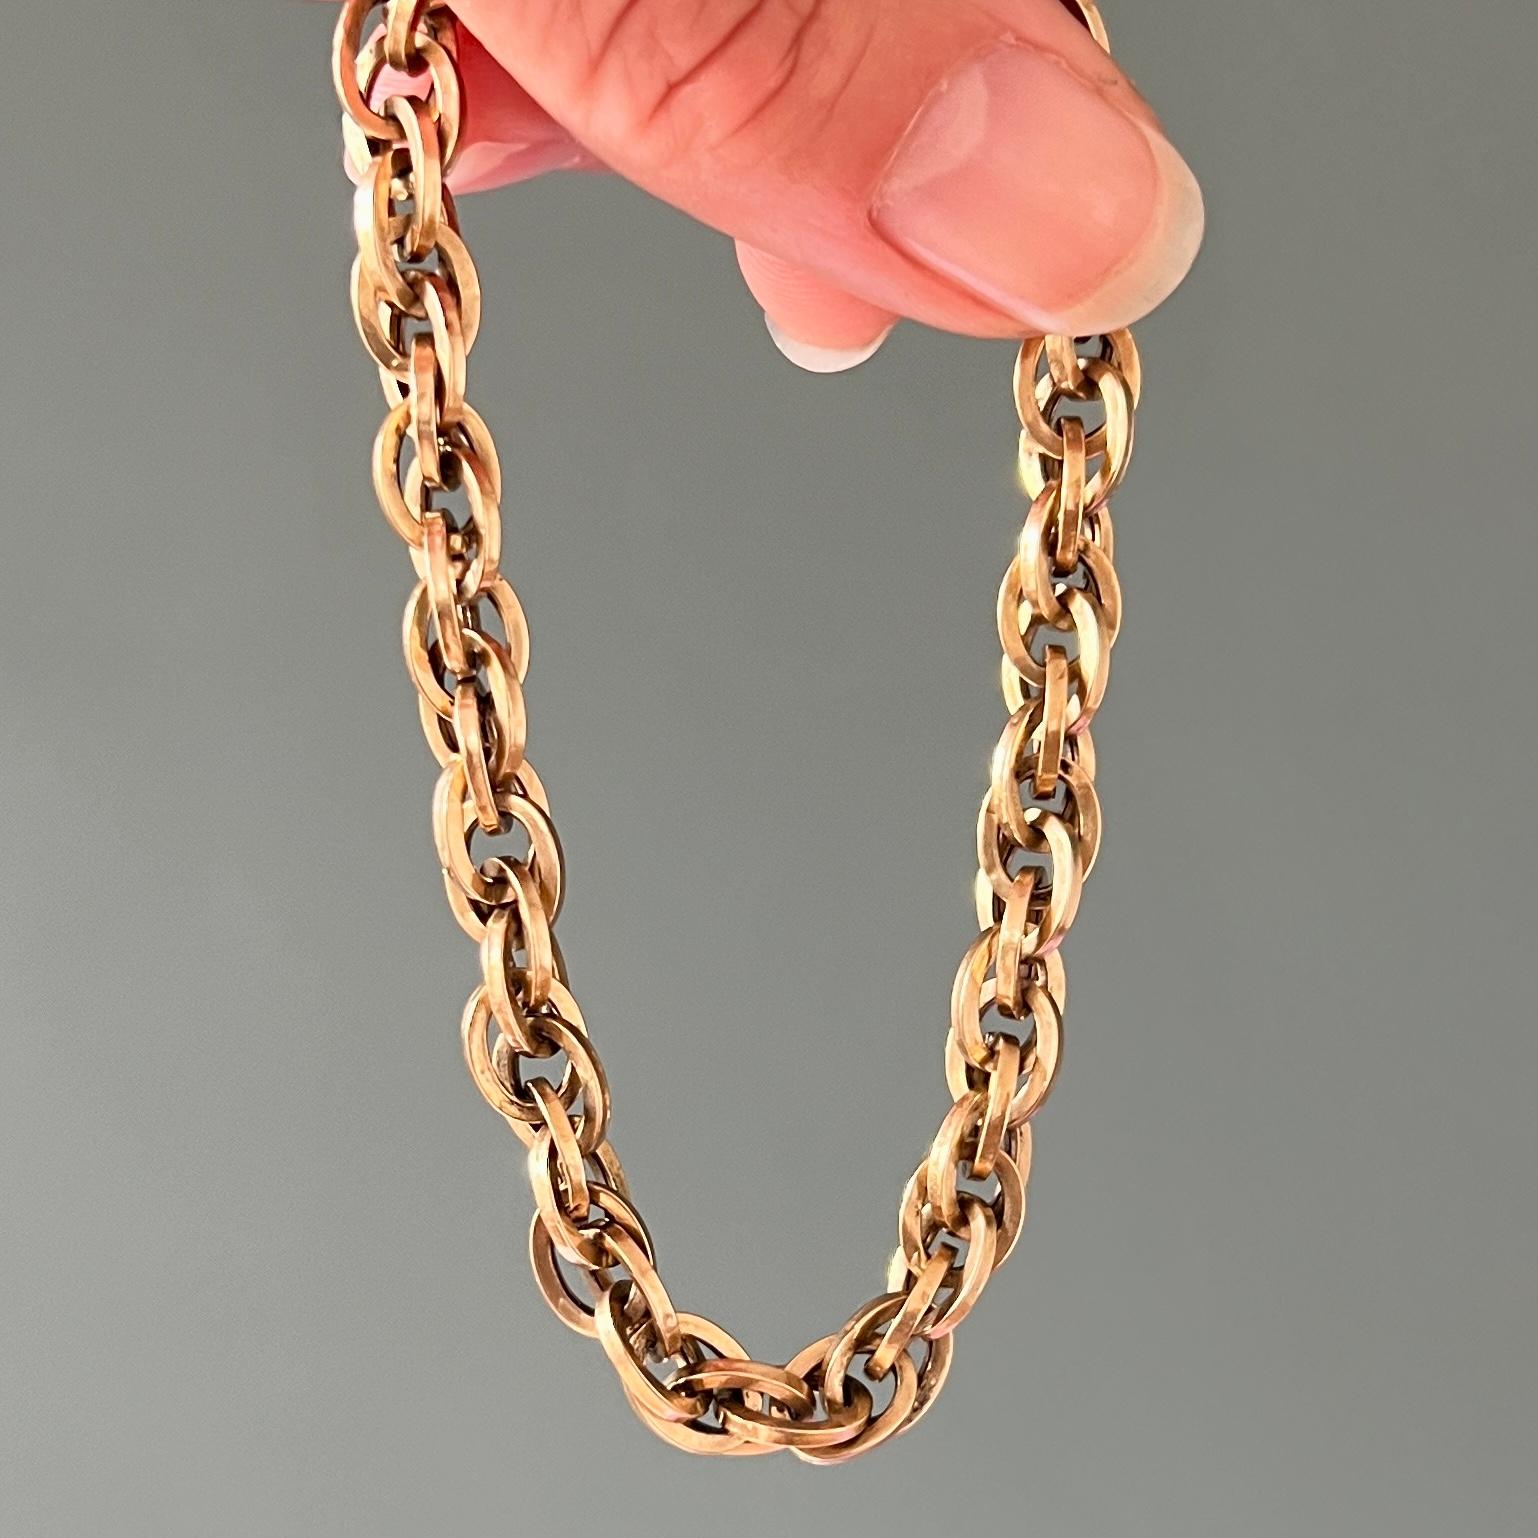 Bracelet vintage italien en or 18 carats composé de maillons ovales sous forme de doubles boucles creuses. Ce bracelet exceptionnel, fin et impressionnant a été créé en or jaune 18 carats. Le bracelet articulé multidimensionnel se compose de